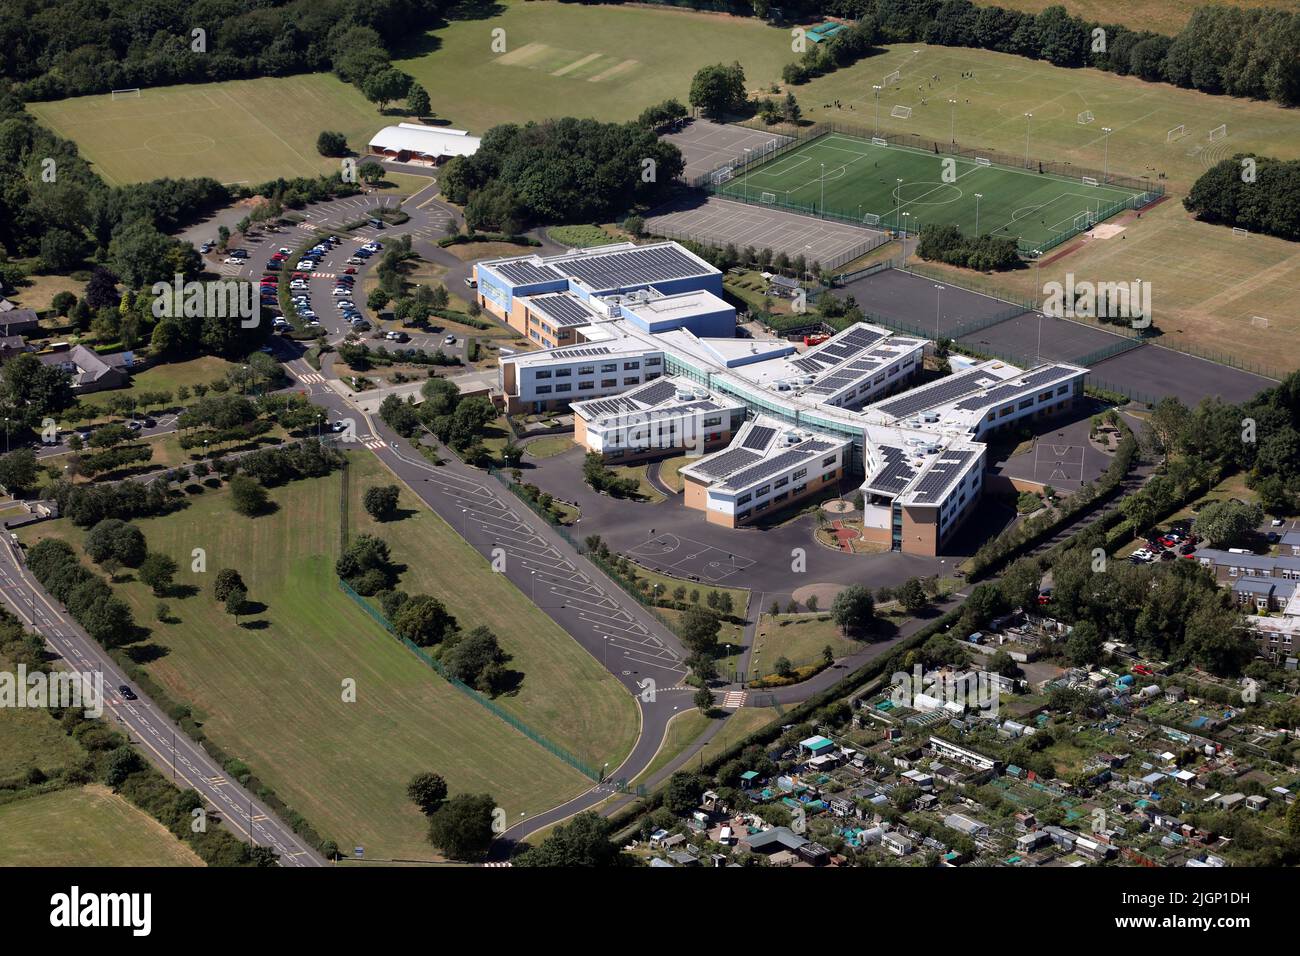 Vue aérienne de l'école secondaire Walbottle Academy n° Newcastle upon Tyne, Tyne & Wear. Le club de cricket Benwell & Walbottle est visible en arrière-plan. Banque D'Images